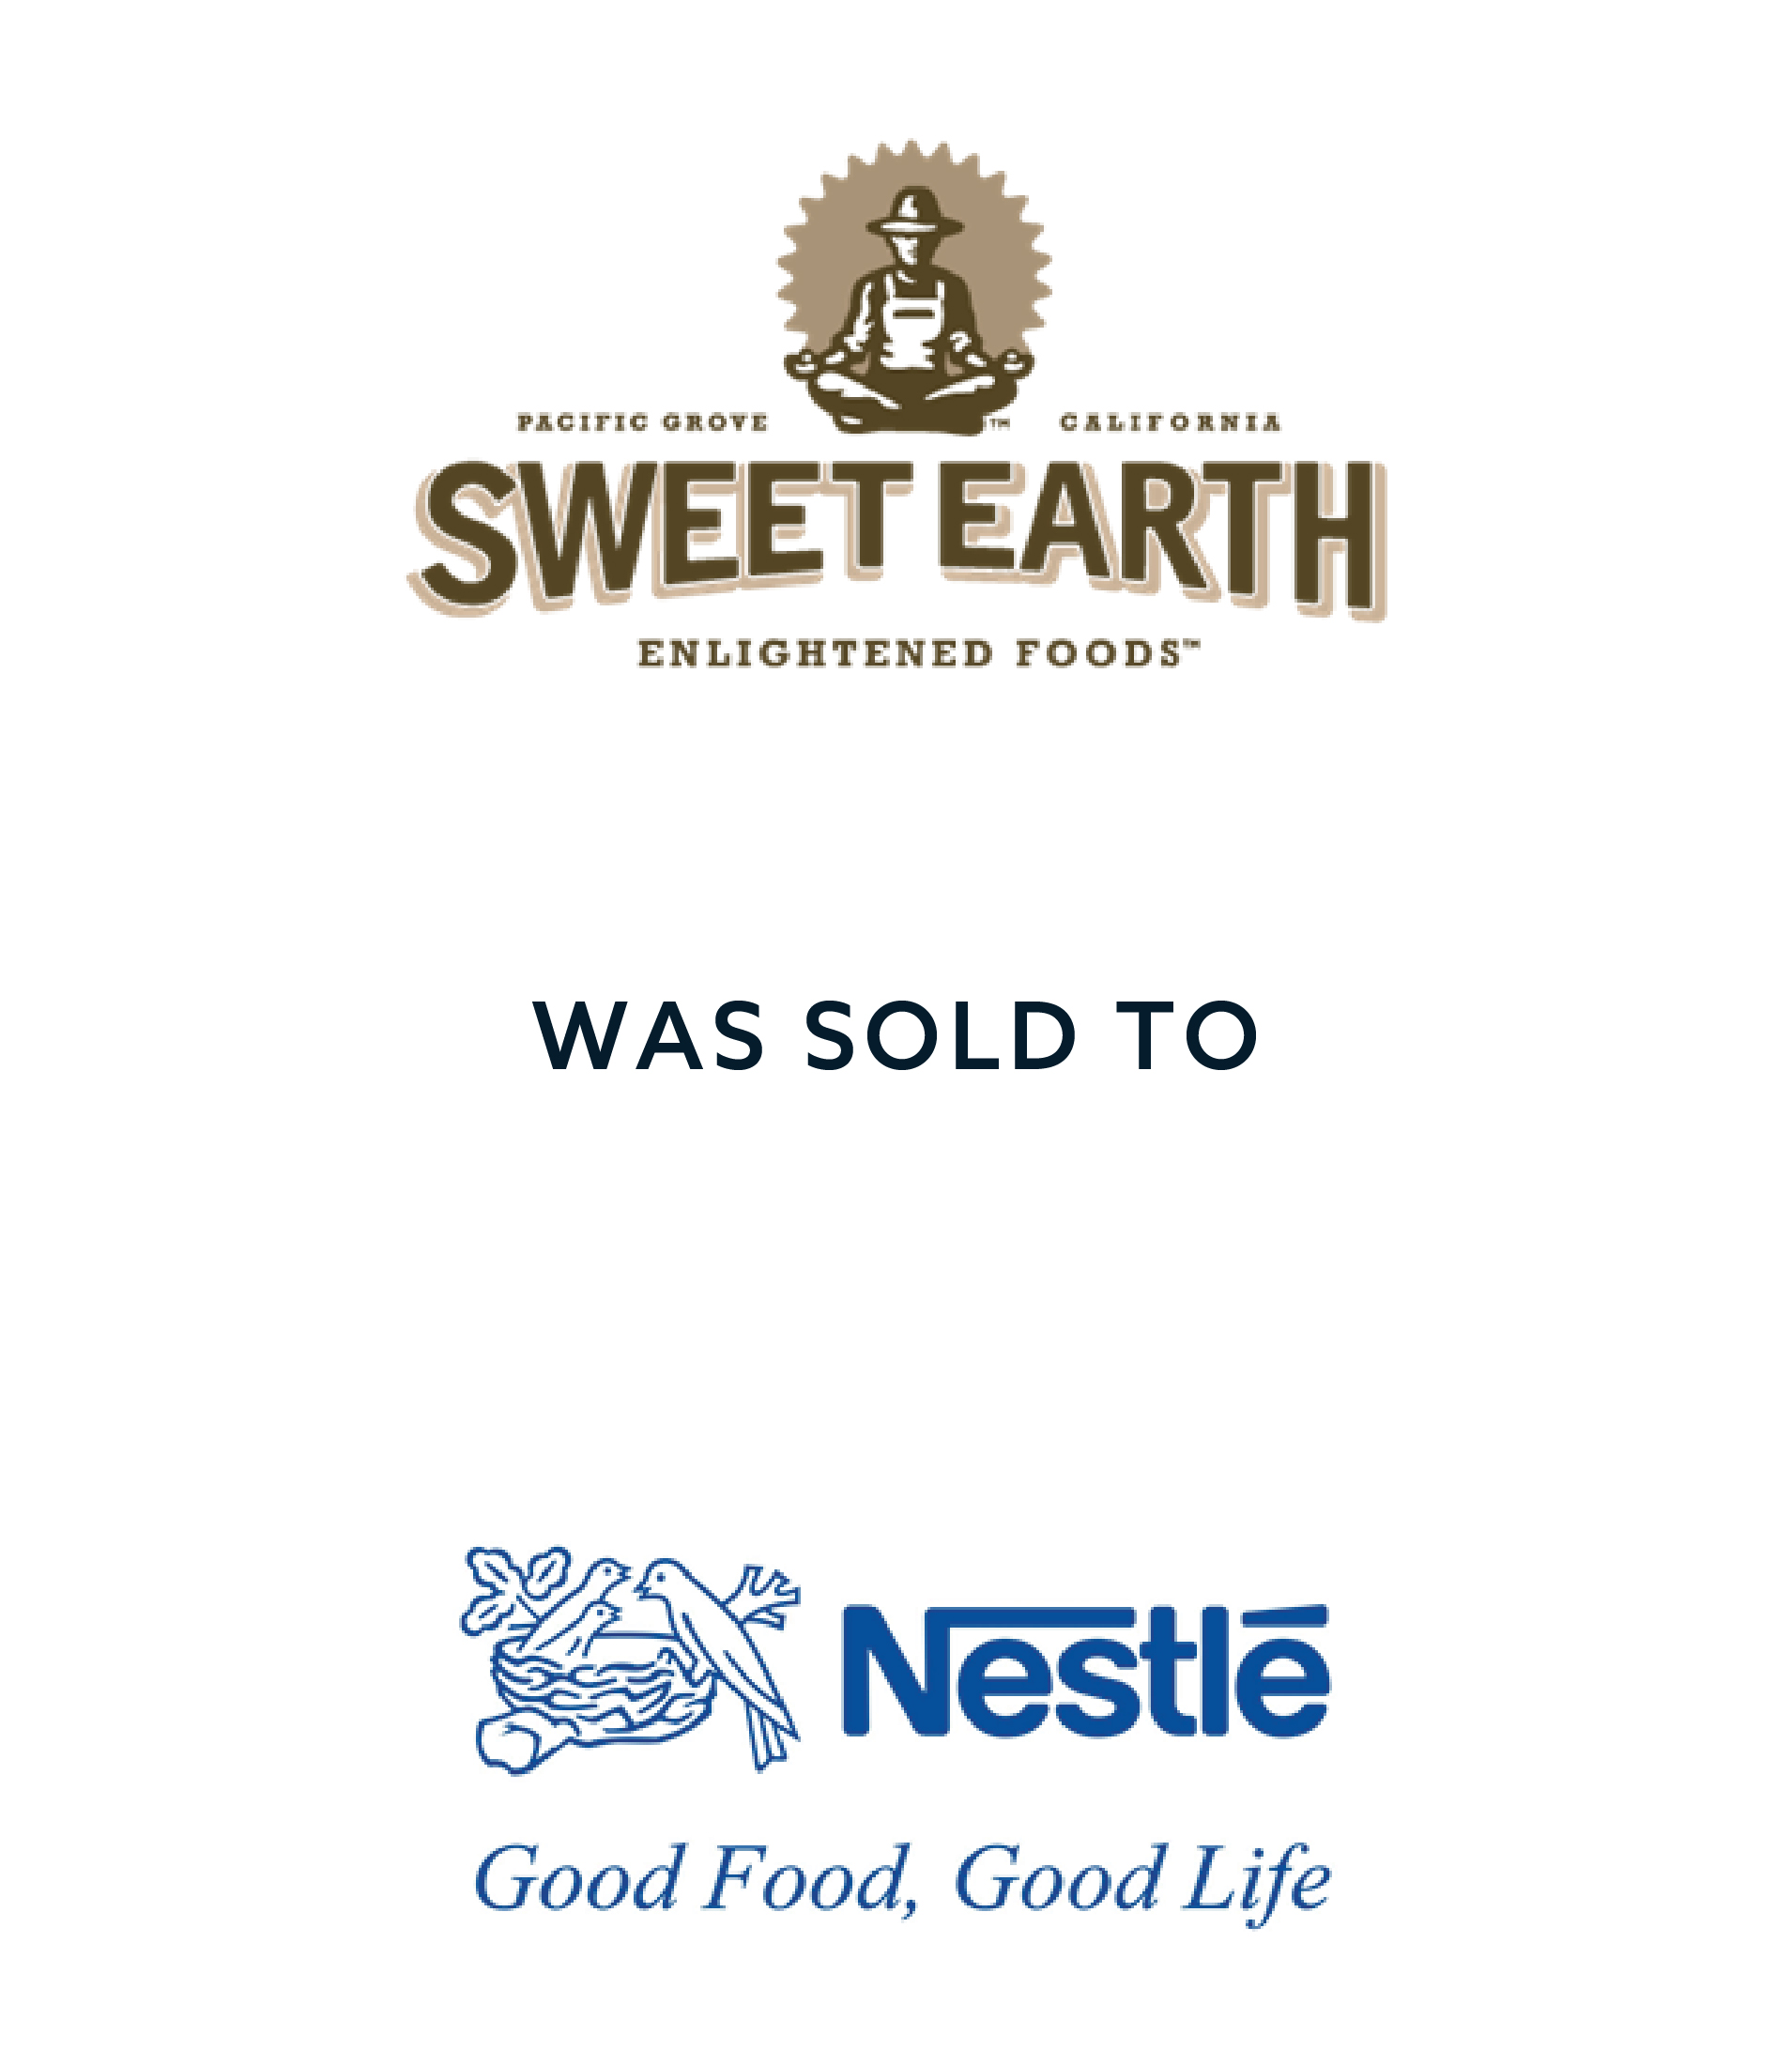 SweetEarth_Nestle_019533.0001